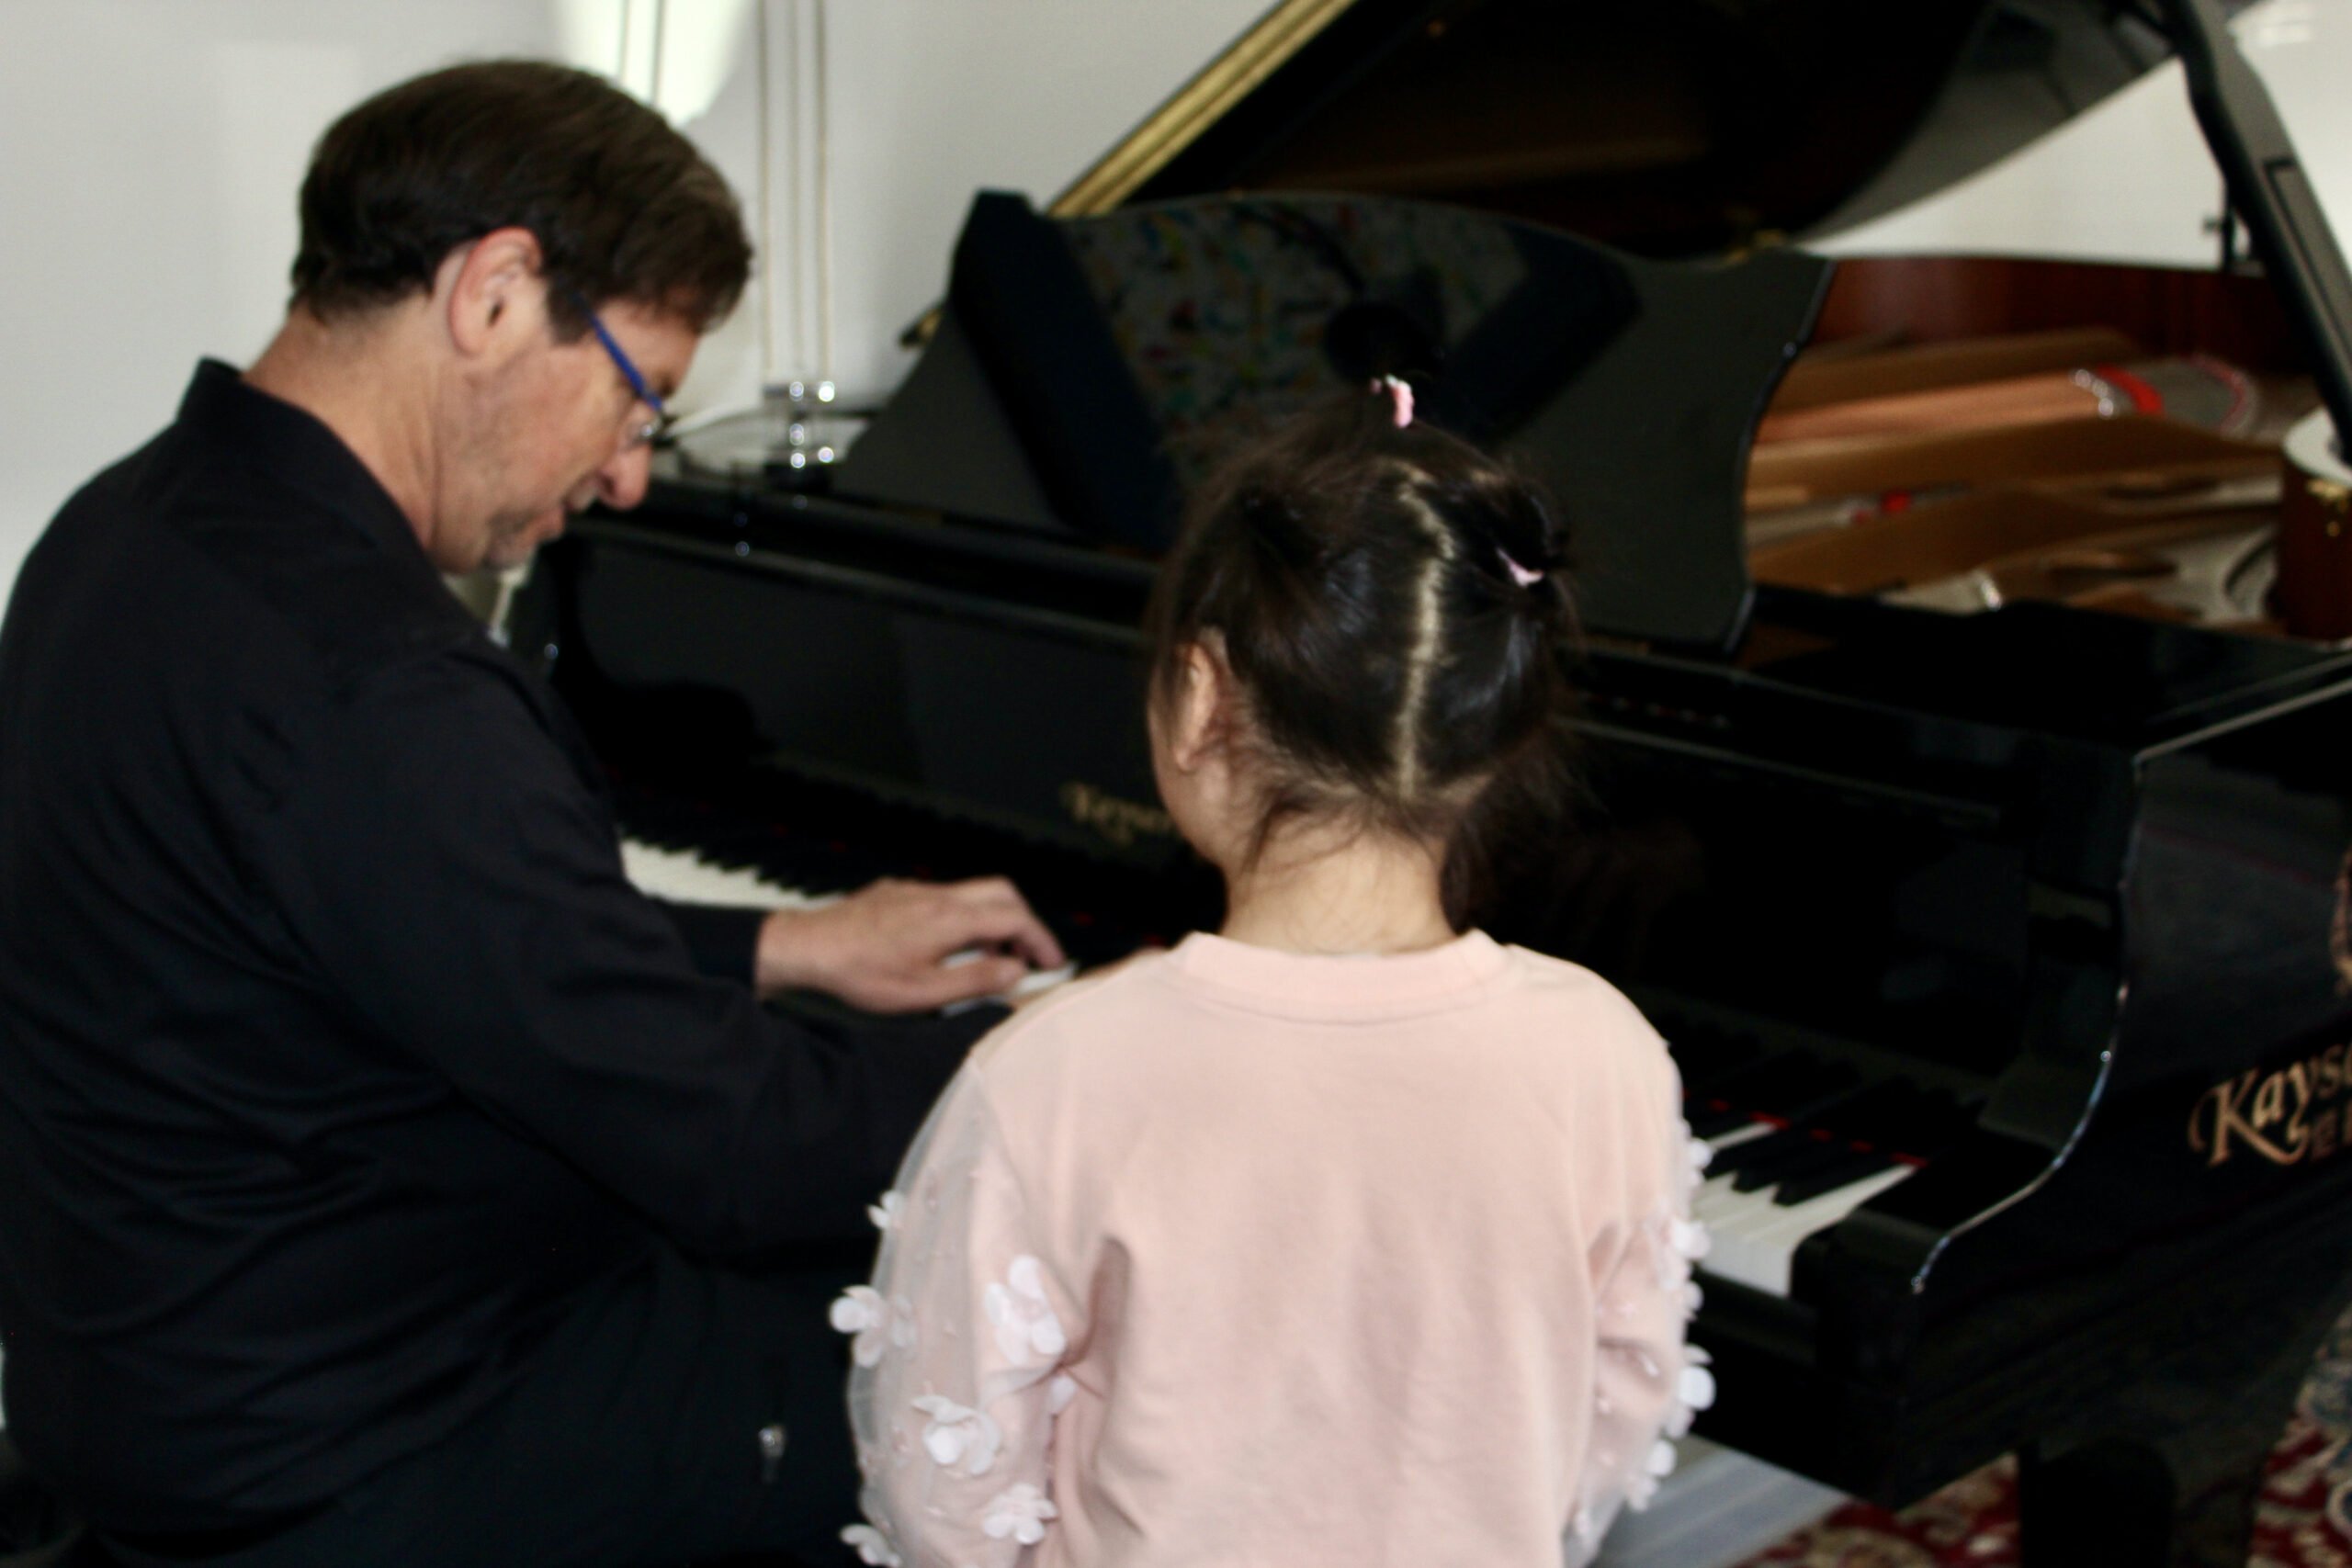 Dr. Silva instructing at the piano